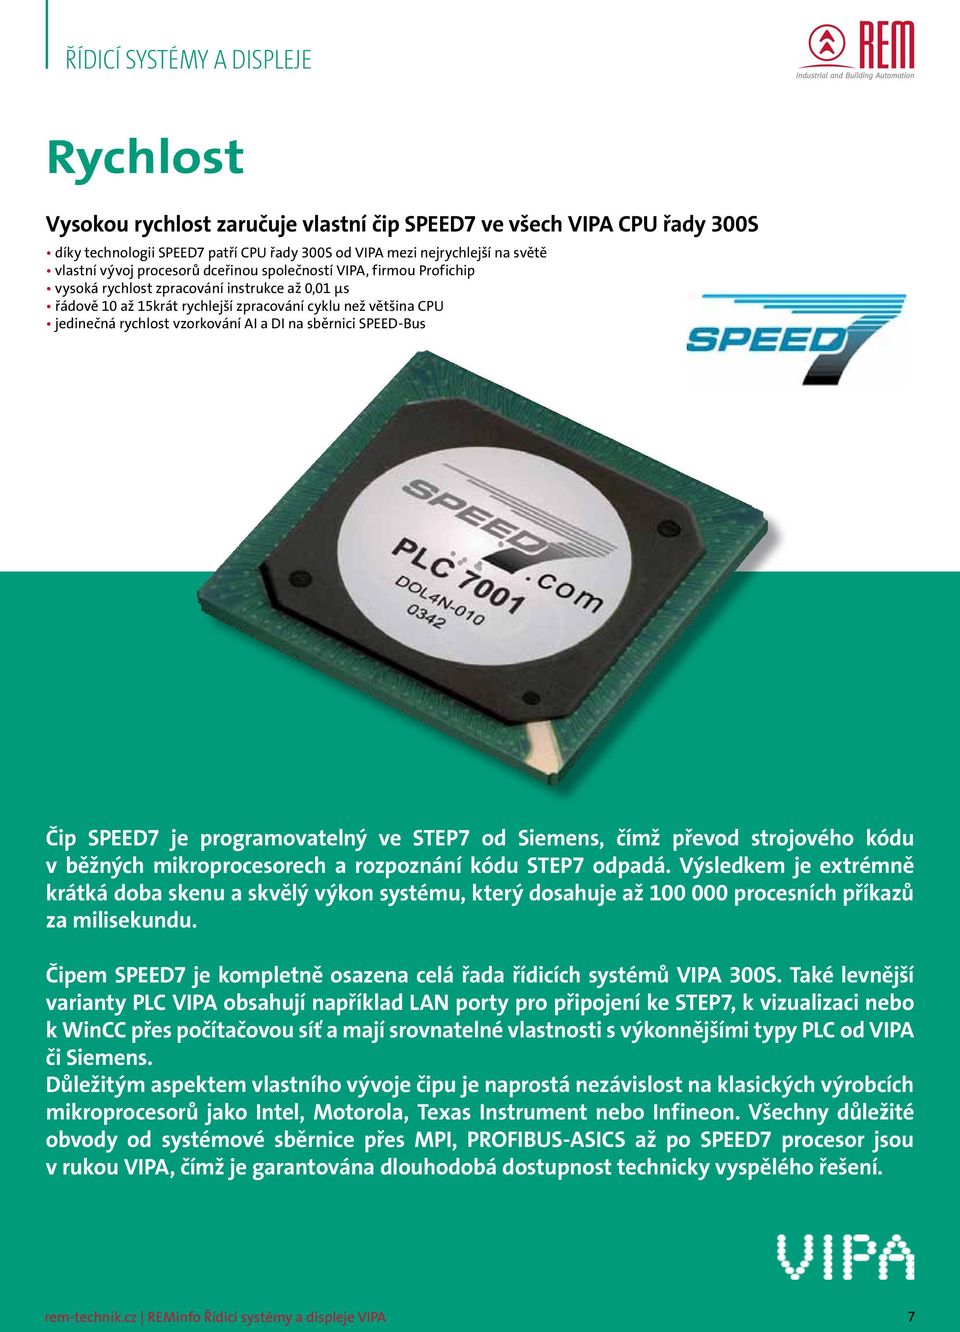 SPEED-Bus Čip SPEED7 je programovatelný ve STEP7 od Siemens, čímž převod strojového kódu v běžných mikroprocesorech a rozpoznání kódu STEP7 odpadá.